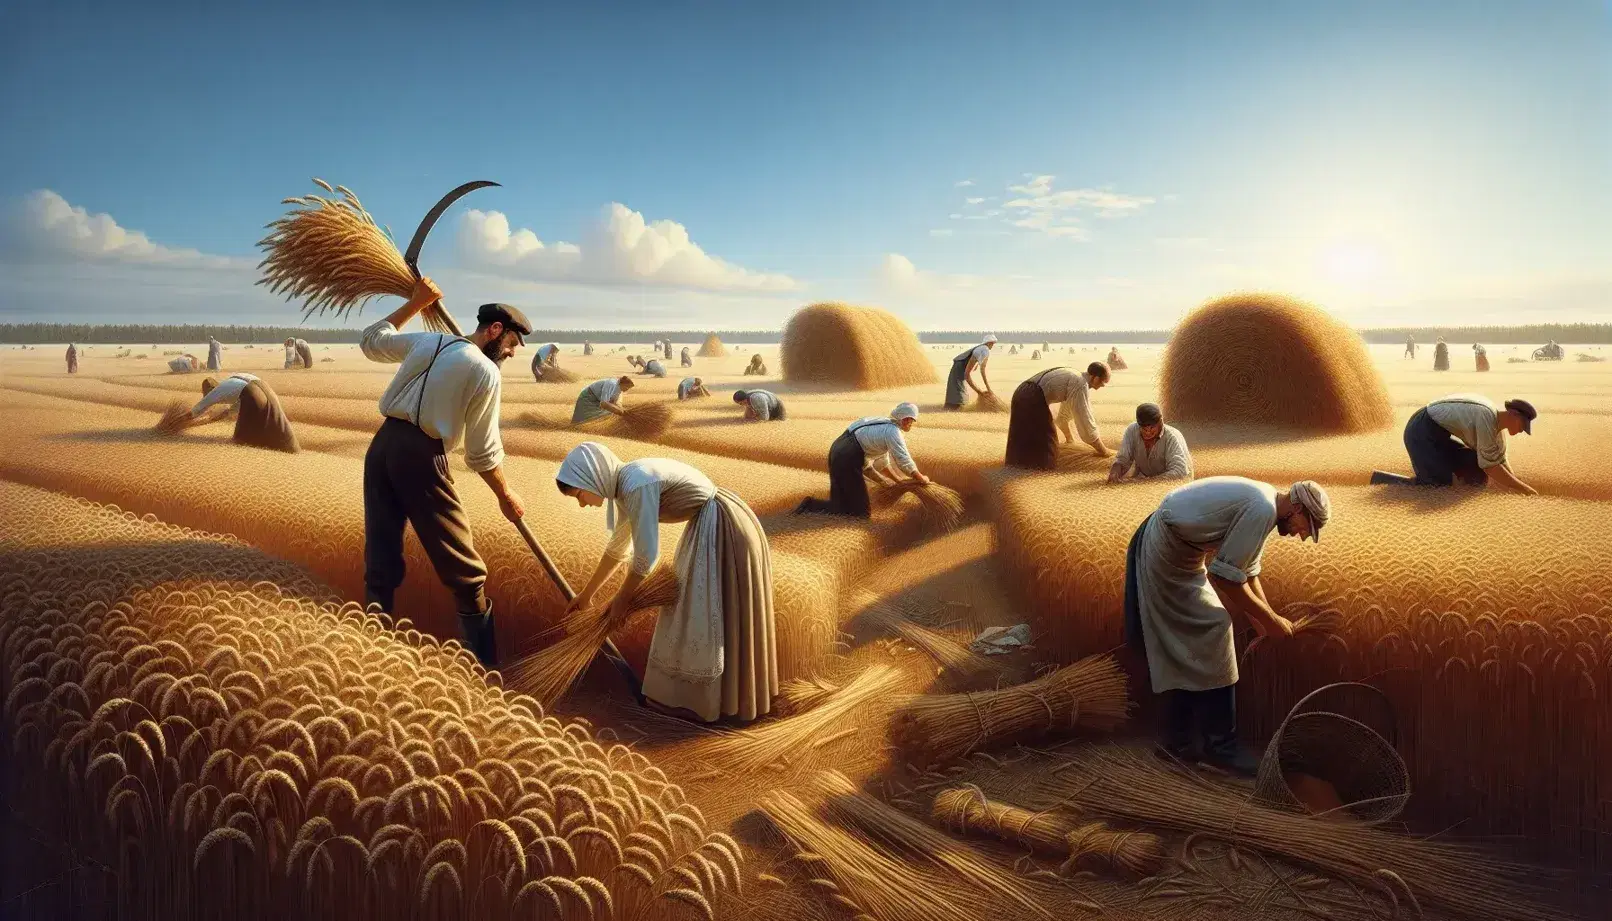 Campesinos rusos trabajando en campo de trigo dorado bajo cielo azul, con hombre segando y mujer atando gavillas.